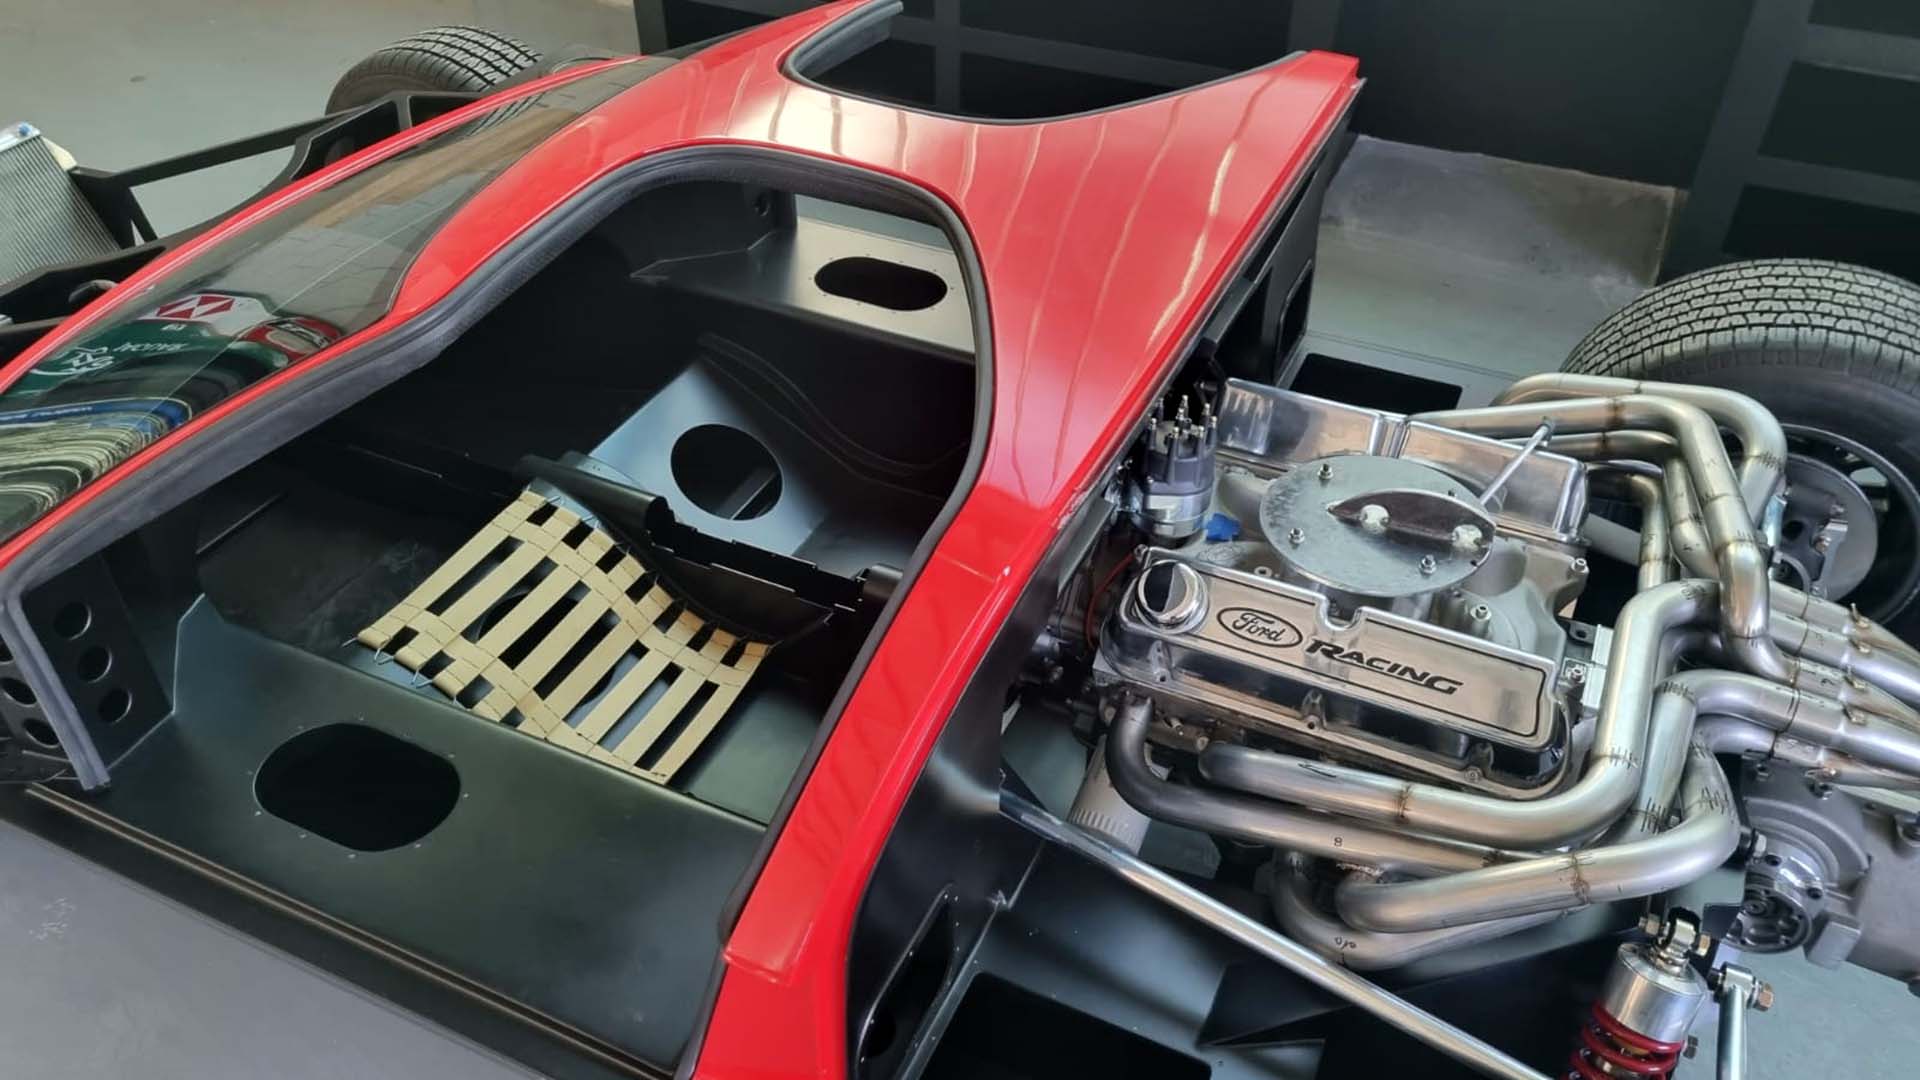 Il motore V8 installato nel prototipo che uscirà a dicembre a Cordova.  L'abitacolo è una replica esatta dell'originale Ford GT40